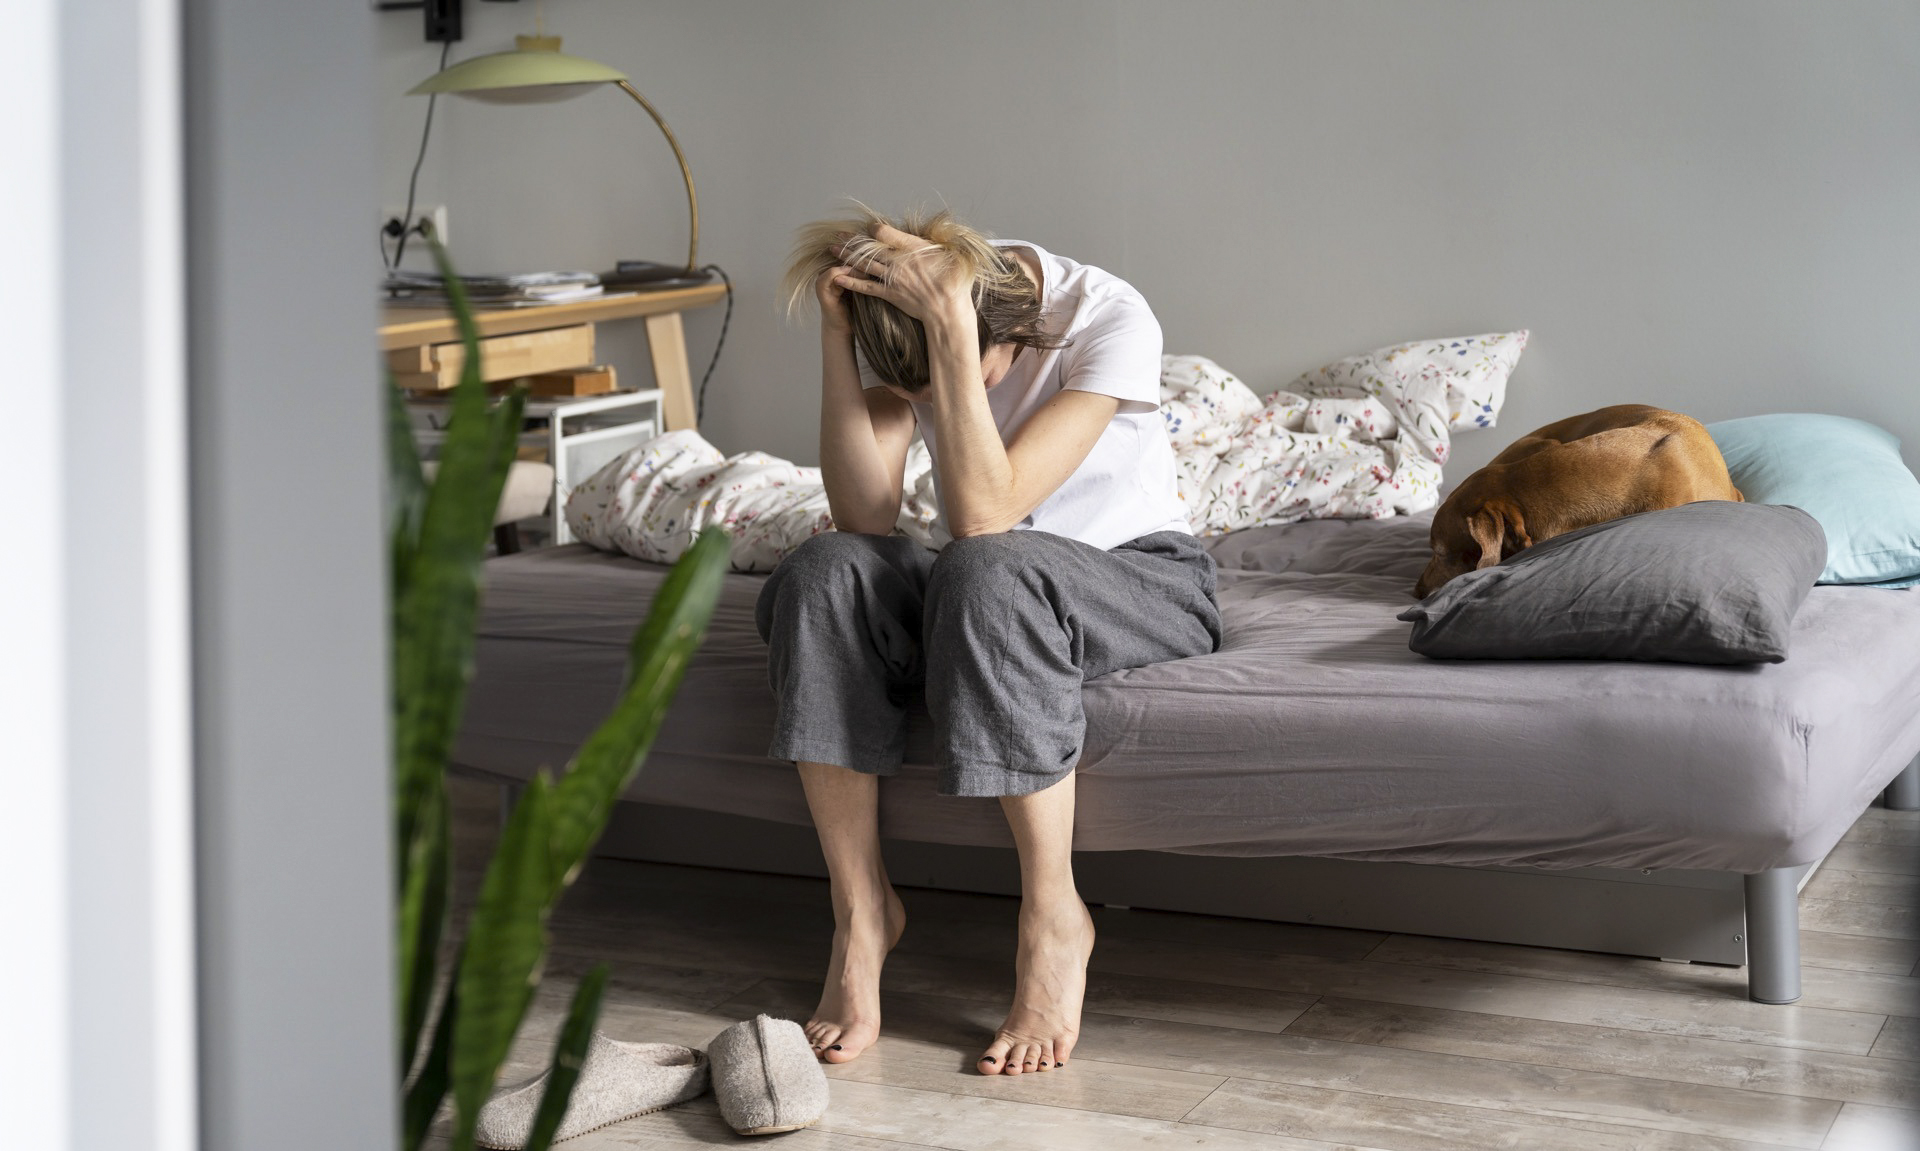 Le nouveau sous-type de dépression découvert pourrait concerner 27 % des patients souffrant de troubles dépressifs majeurs. © DimaBerlin, Adobe Stock 